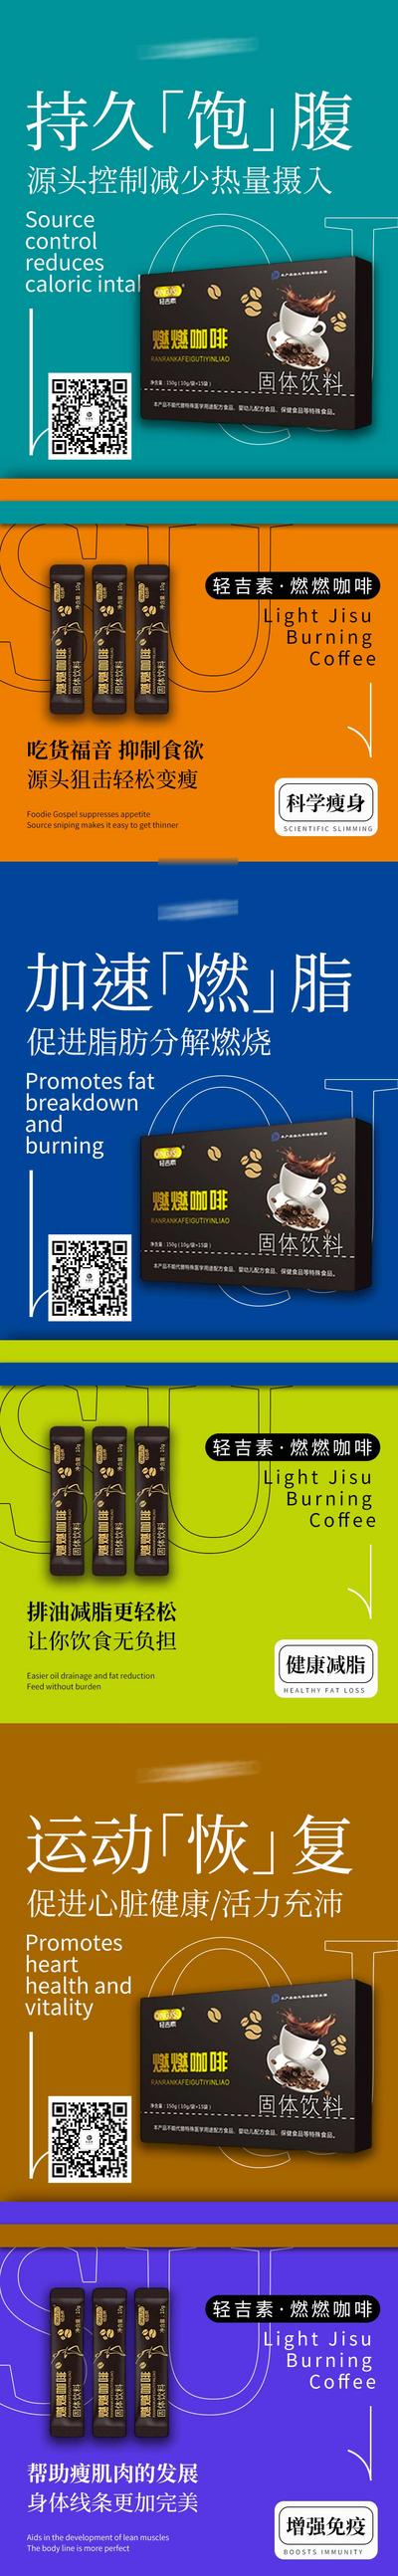 南门网 广告 海报 系列 减脂 咖啡 微商 减肥 瘦身 塑形 代餐咖啡 新零售 产品